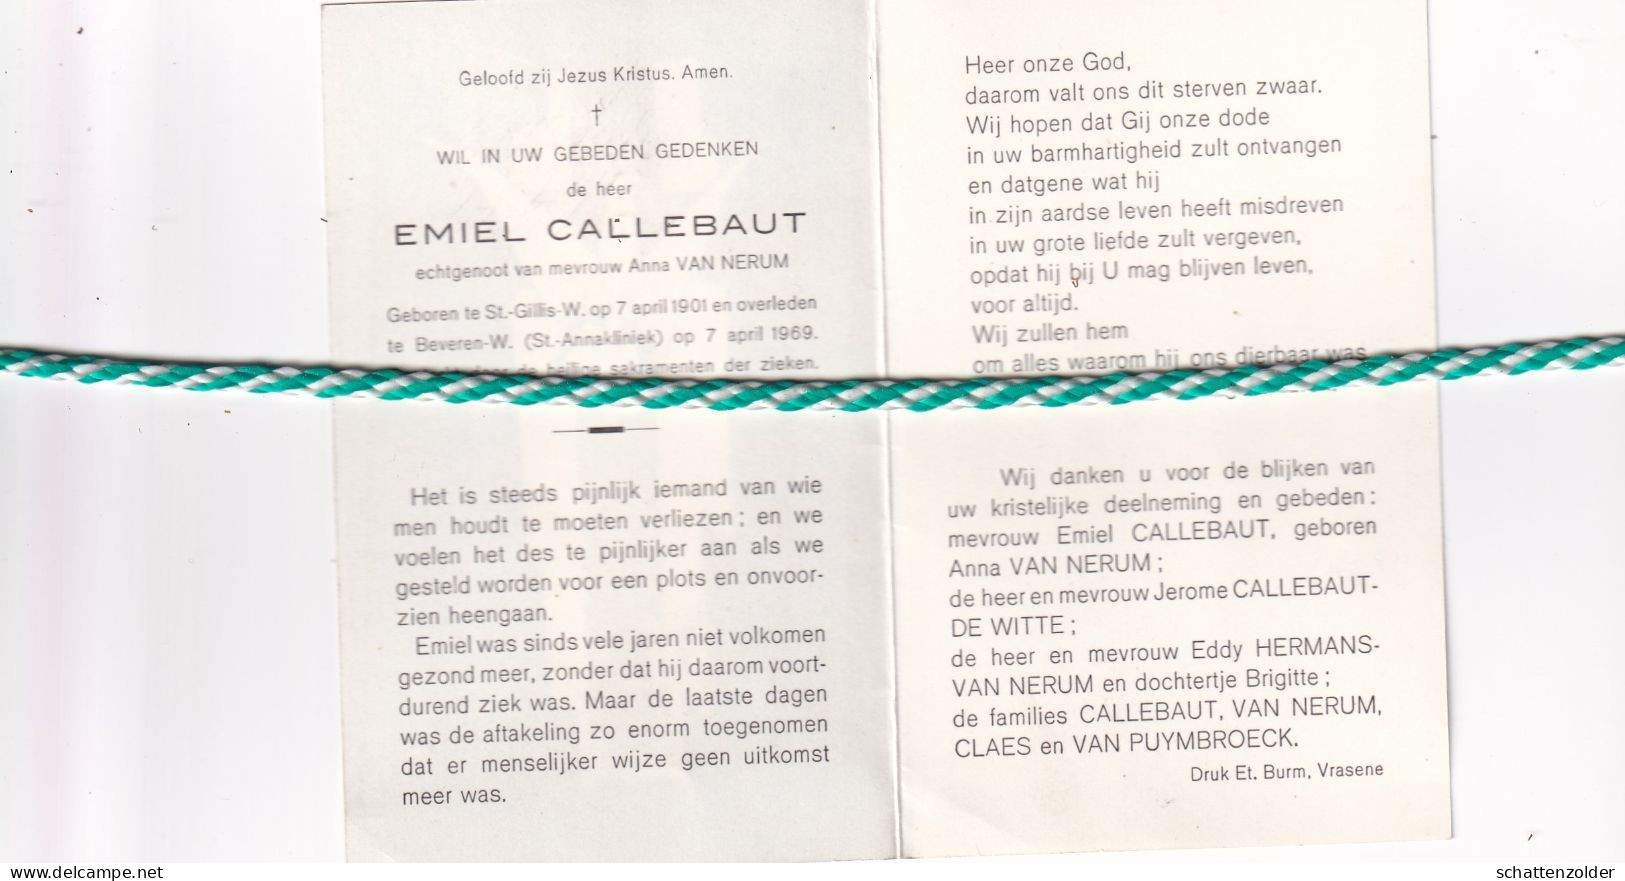 Emiel Callebaut-Van Nerum, Sint-Gillis-Waas 1901, Beveren-Waas 1969 - Obituary Notices